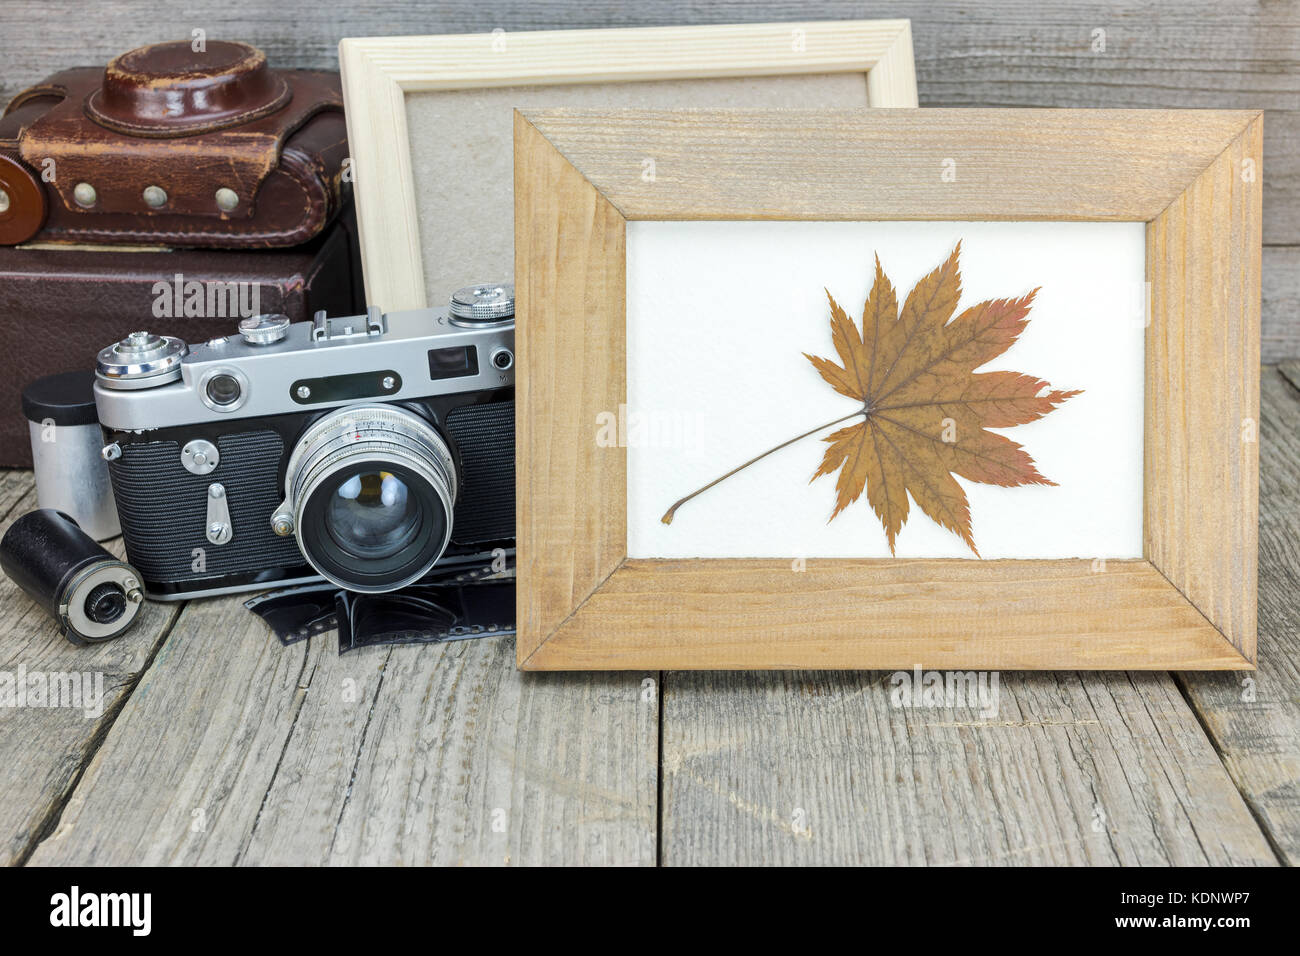 Cadre photo vide et vintage appareil photo avec étui en cuir brun sur la vieille surface en bois gris Banque D'Images